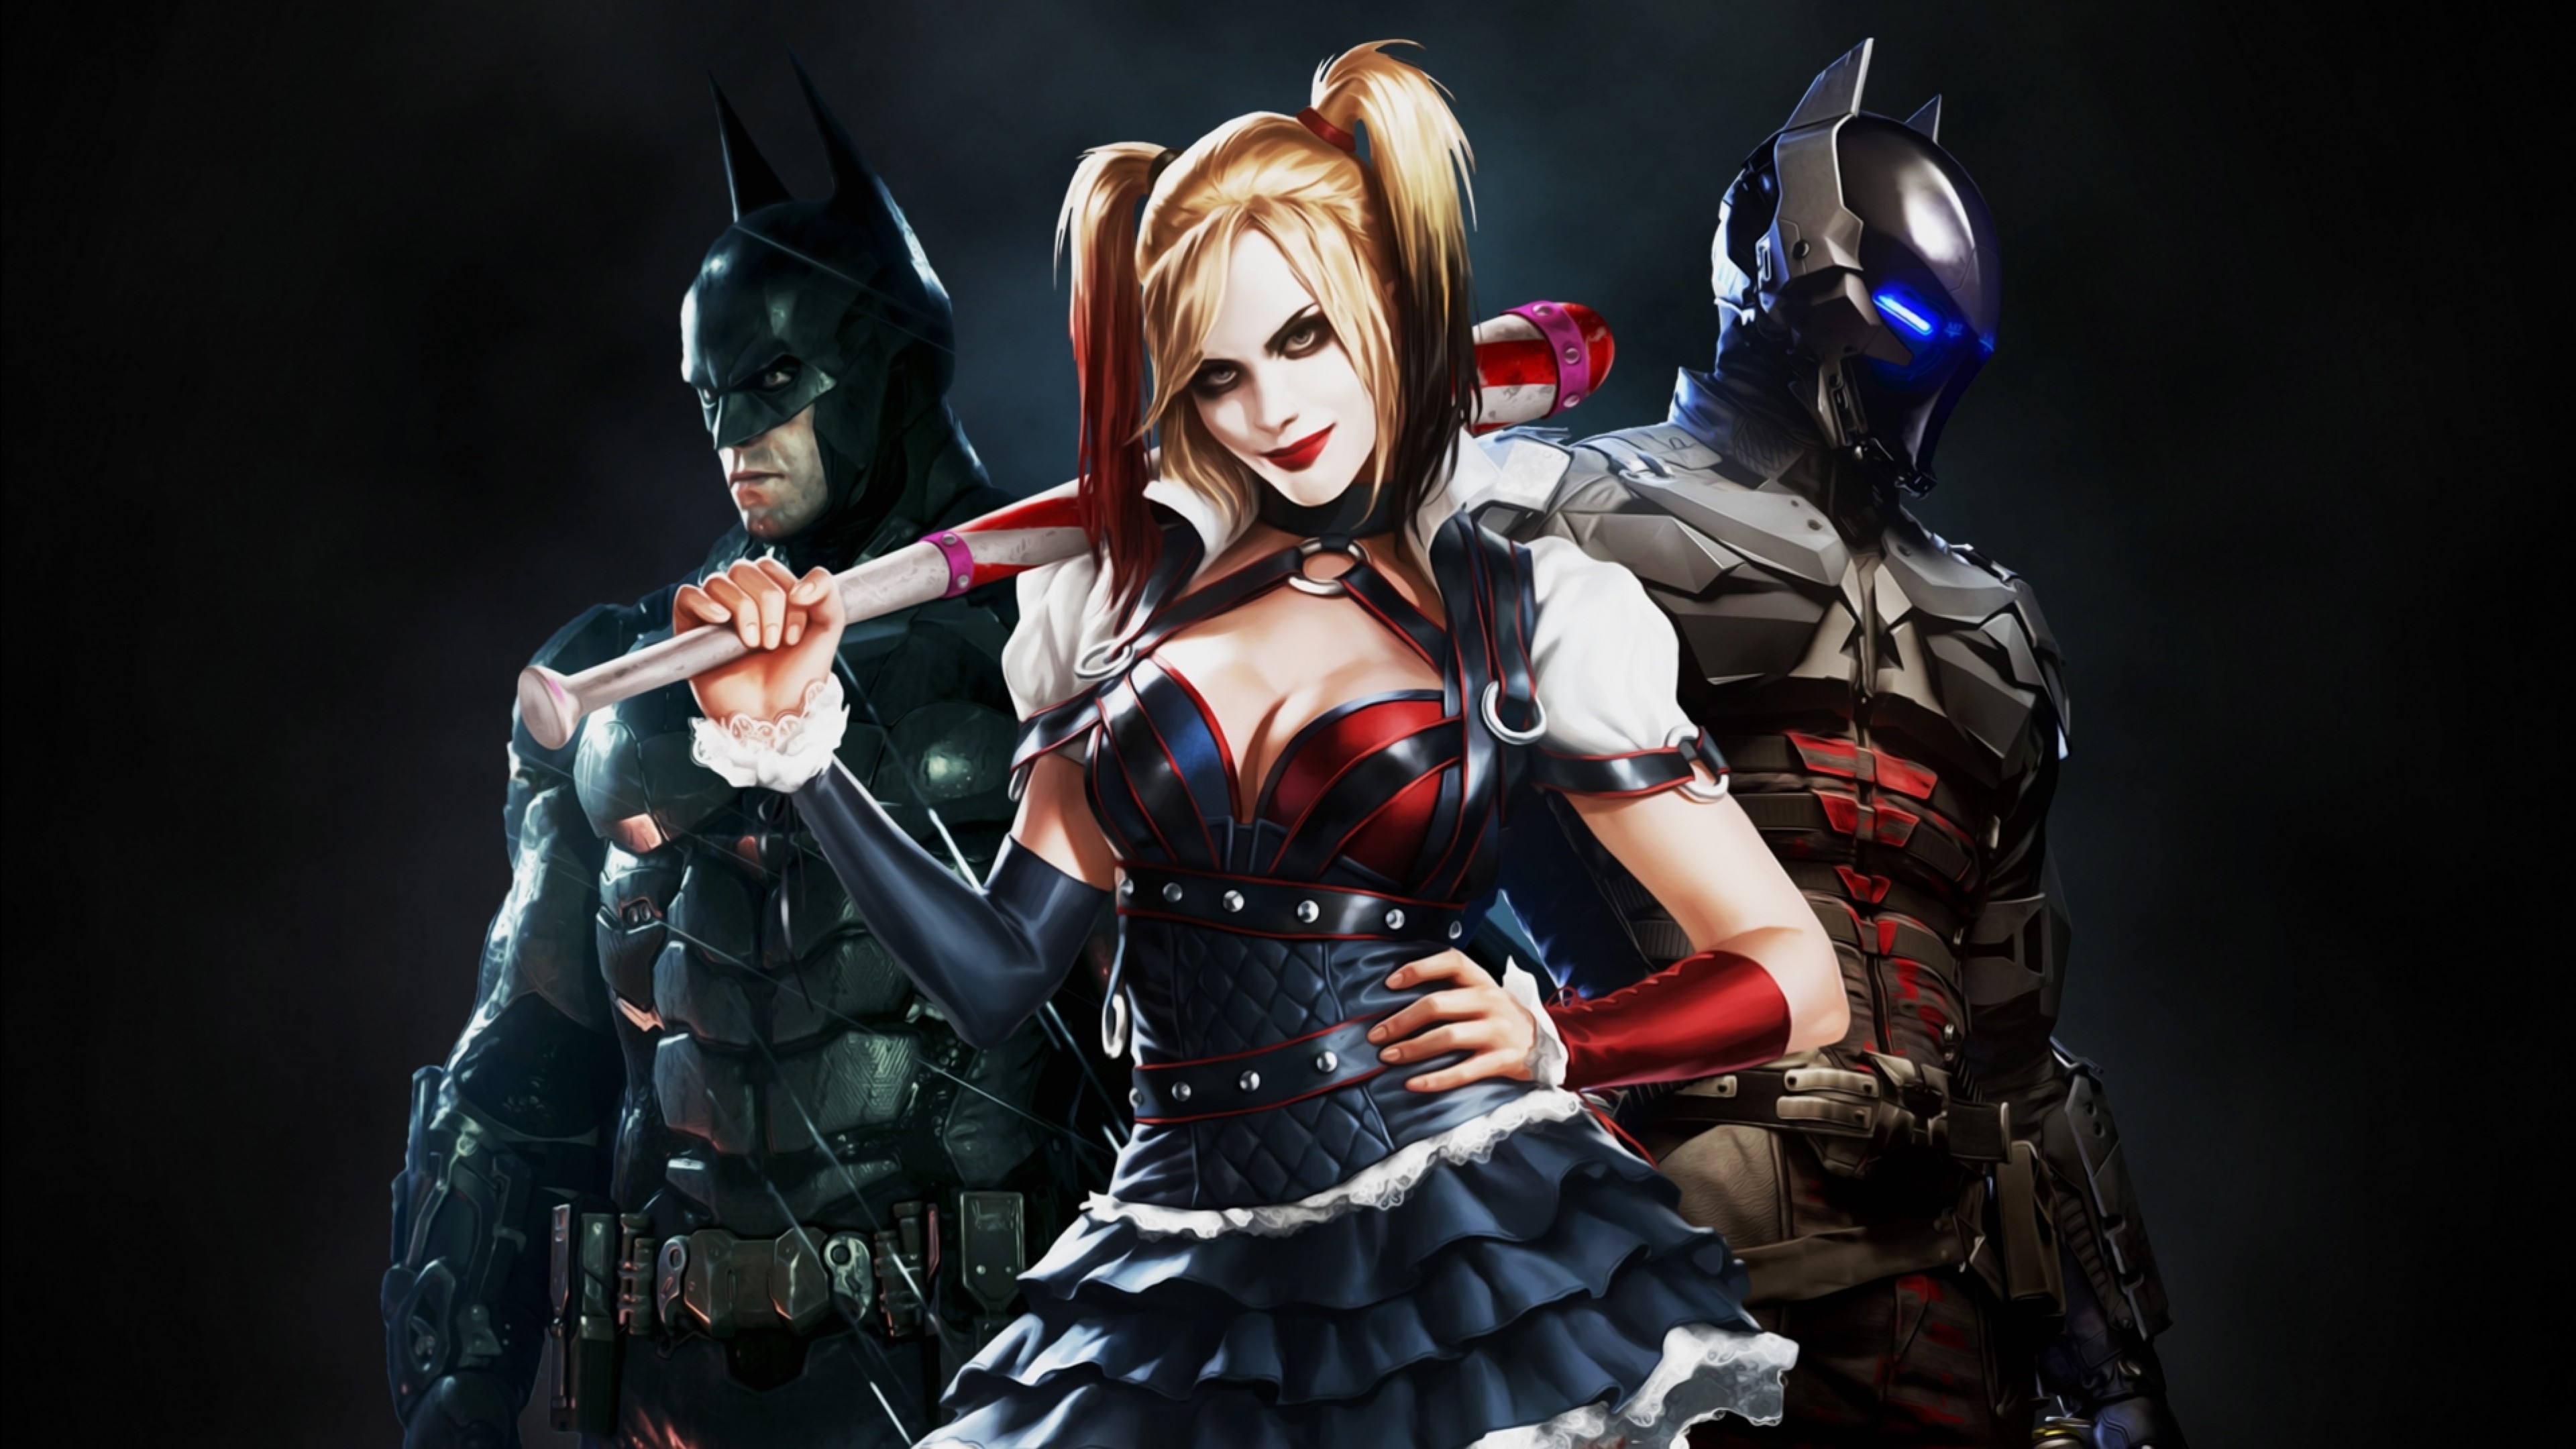 harley quinn desktop wallpaper,action figure,fictional character,cg artwork,supervillain,batman